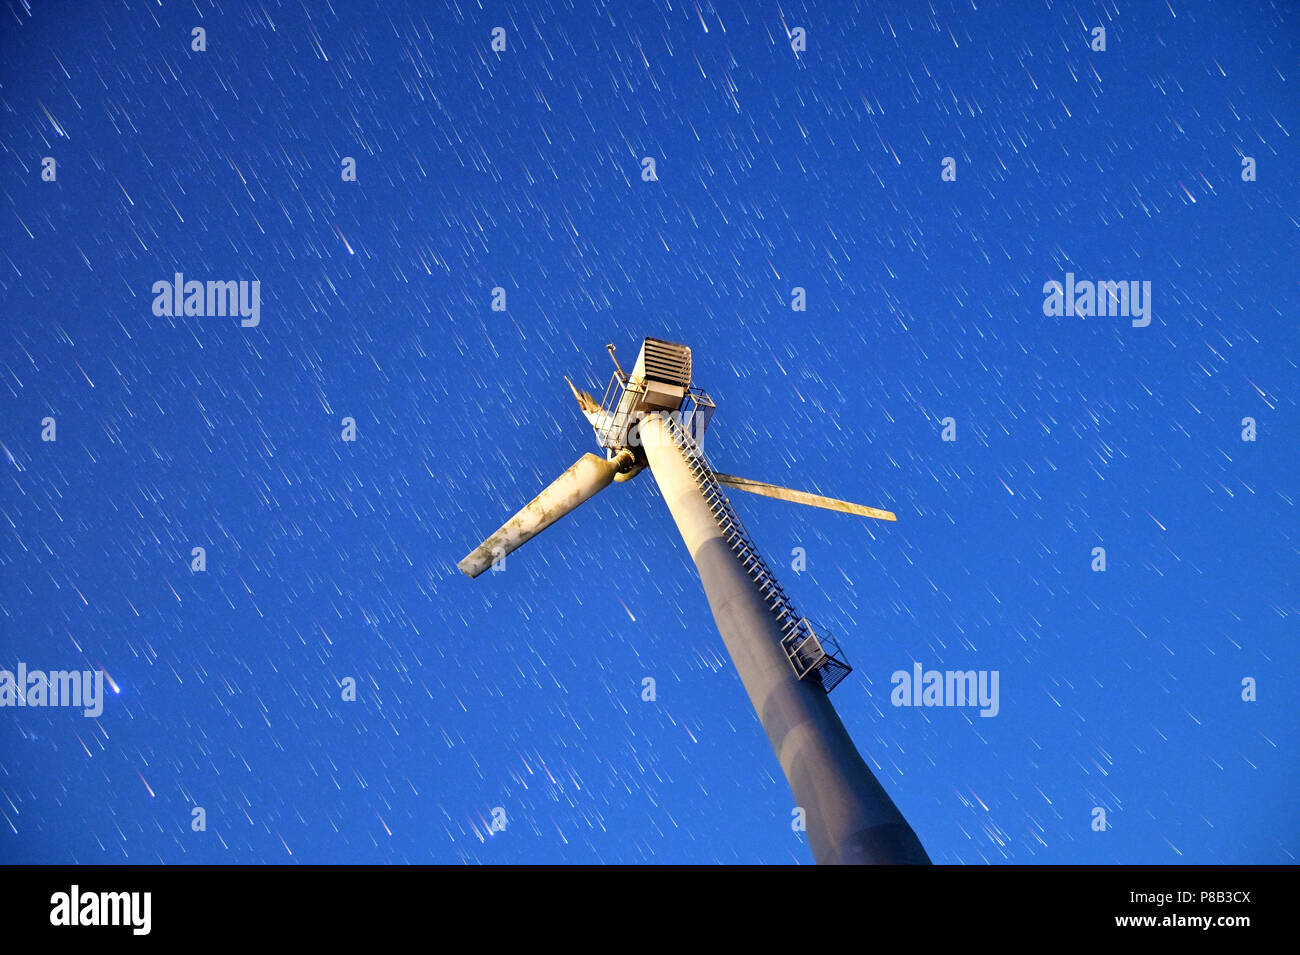 Vue de dessous d'une lame endommagée trois wind turbine moulin sur bleu clair ciel nocturne avec star trails. Banque D'Images